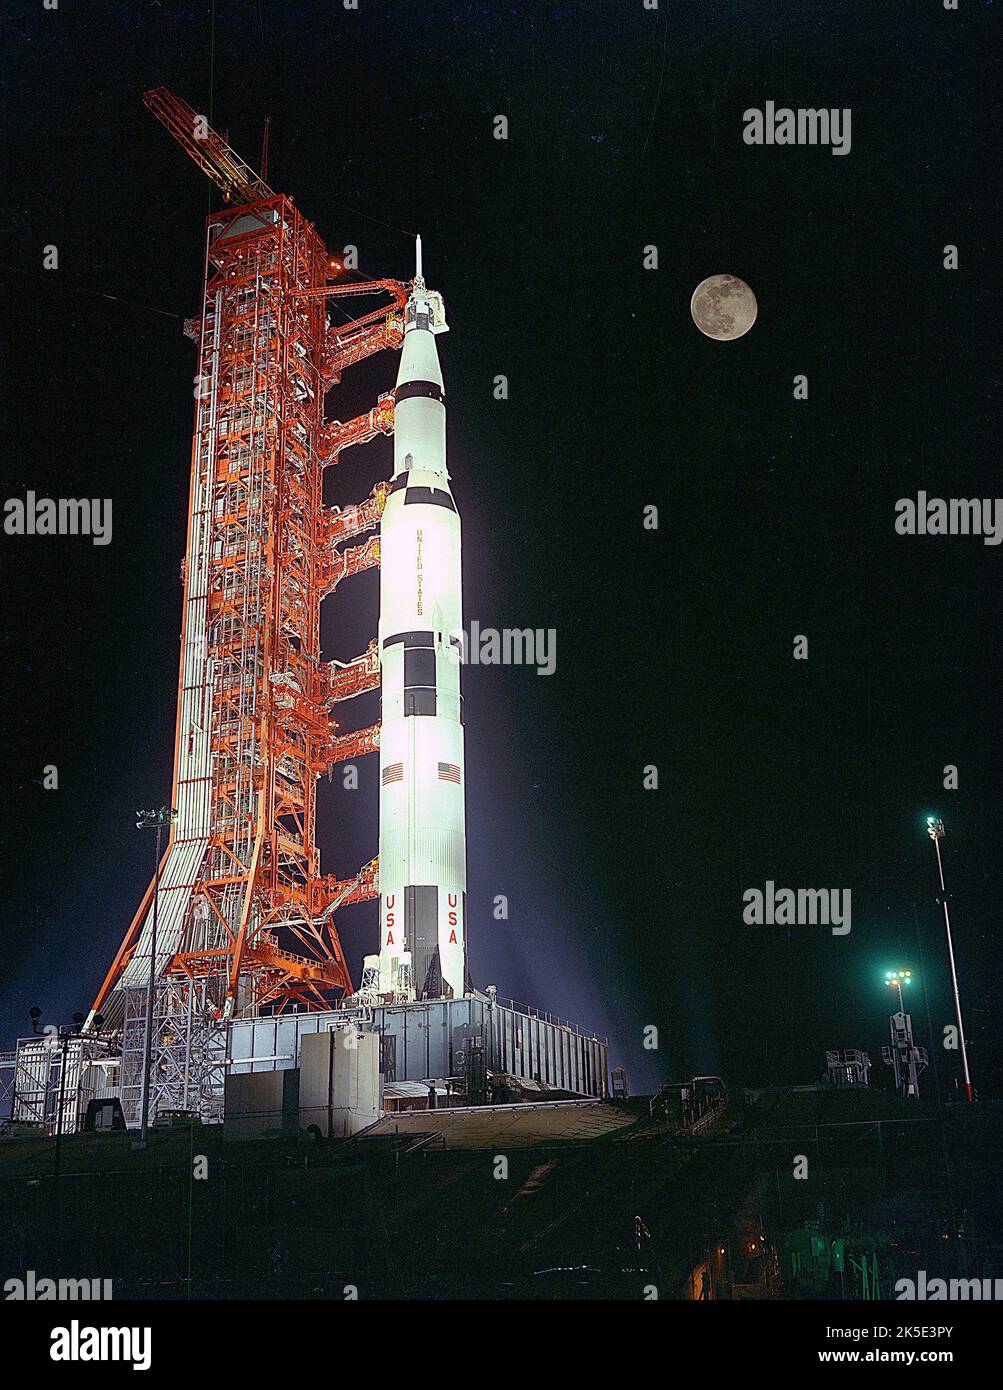 Saturno V sul Launch Pad. Il veicolo di lancio Apollo 17 Saturno V è stato lanciato sotto una luna piena sul Launch Pad 39A al Kennedy Space Center, Florida. durante il conto alla rovescia del lancio. Un'immagine NASA ottimizzata: Credit: NASA Foto Stock